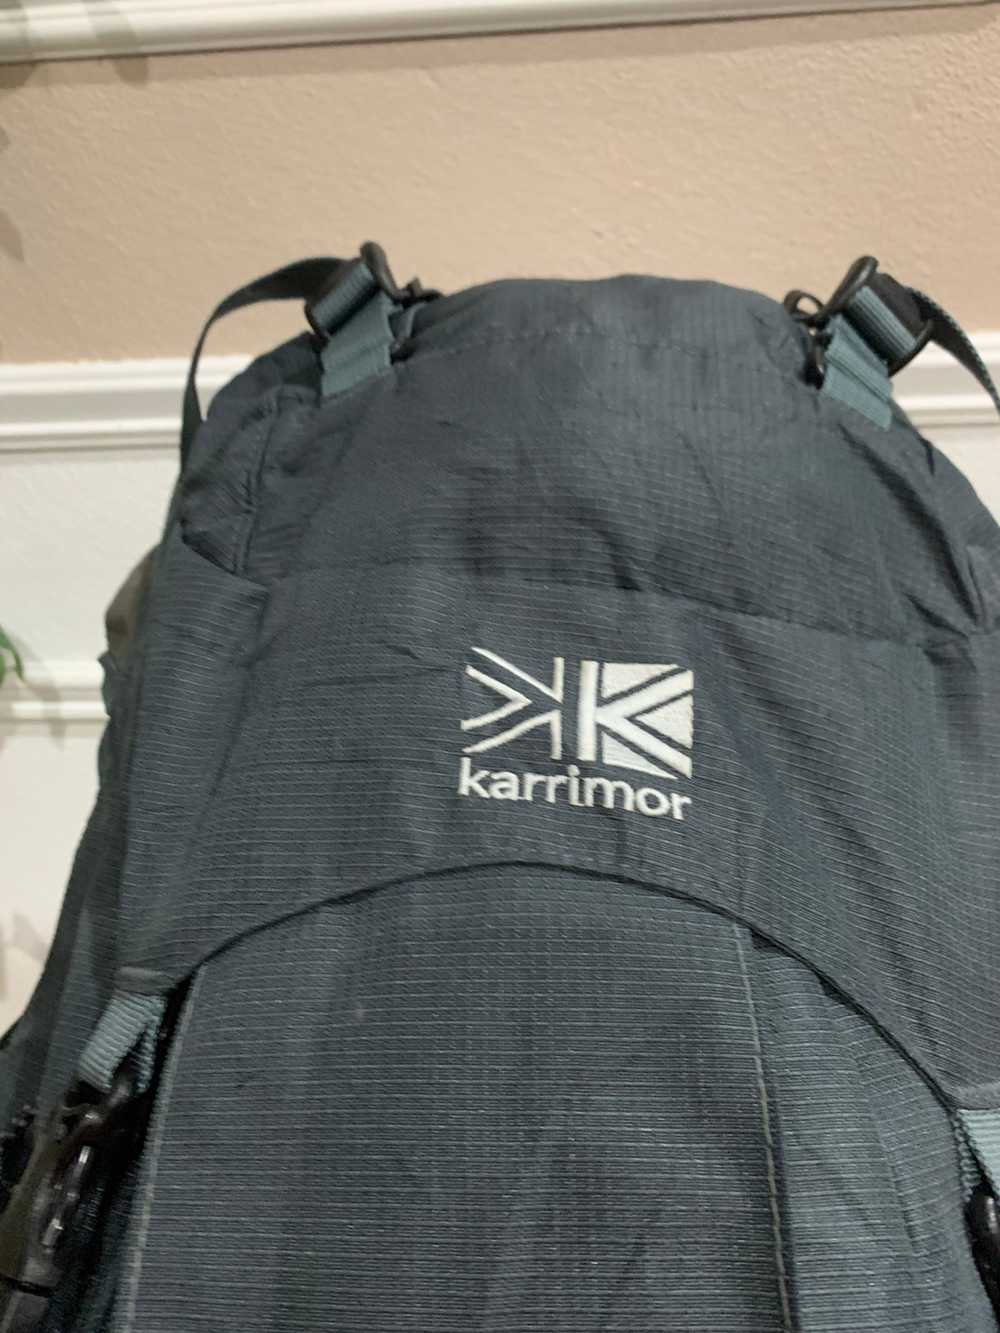 Karrimor - Karrimor hiking bag 30L - image 9